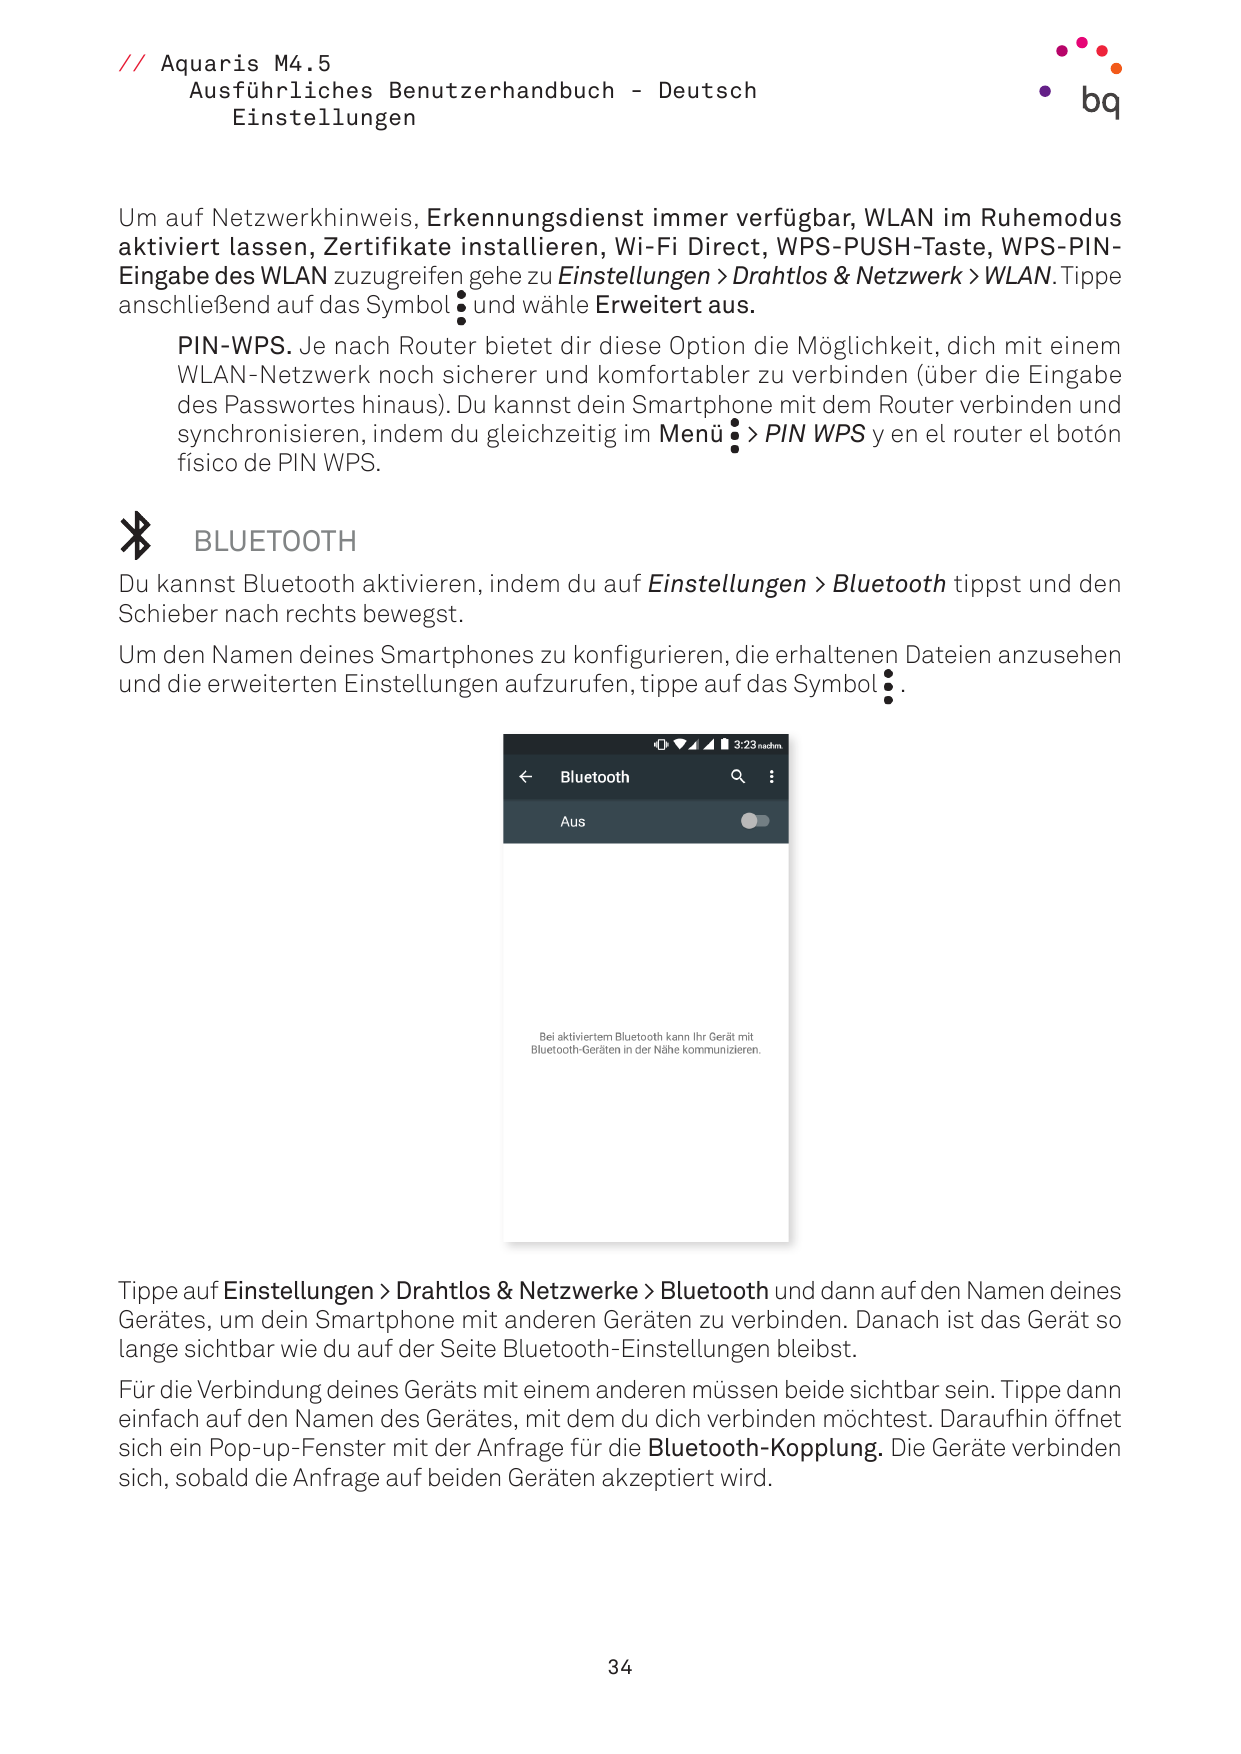 // Aquaris M4.5Ausführliches Benutzerhandbuch - DeutschEinstellungenUm auf Netzwerkhinweis, Erkennungsdienst immer verfügbar, WL